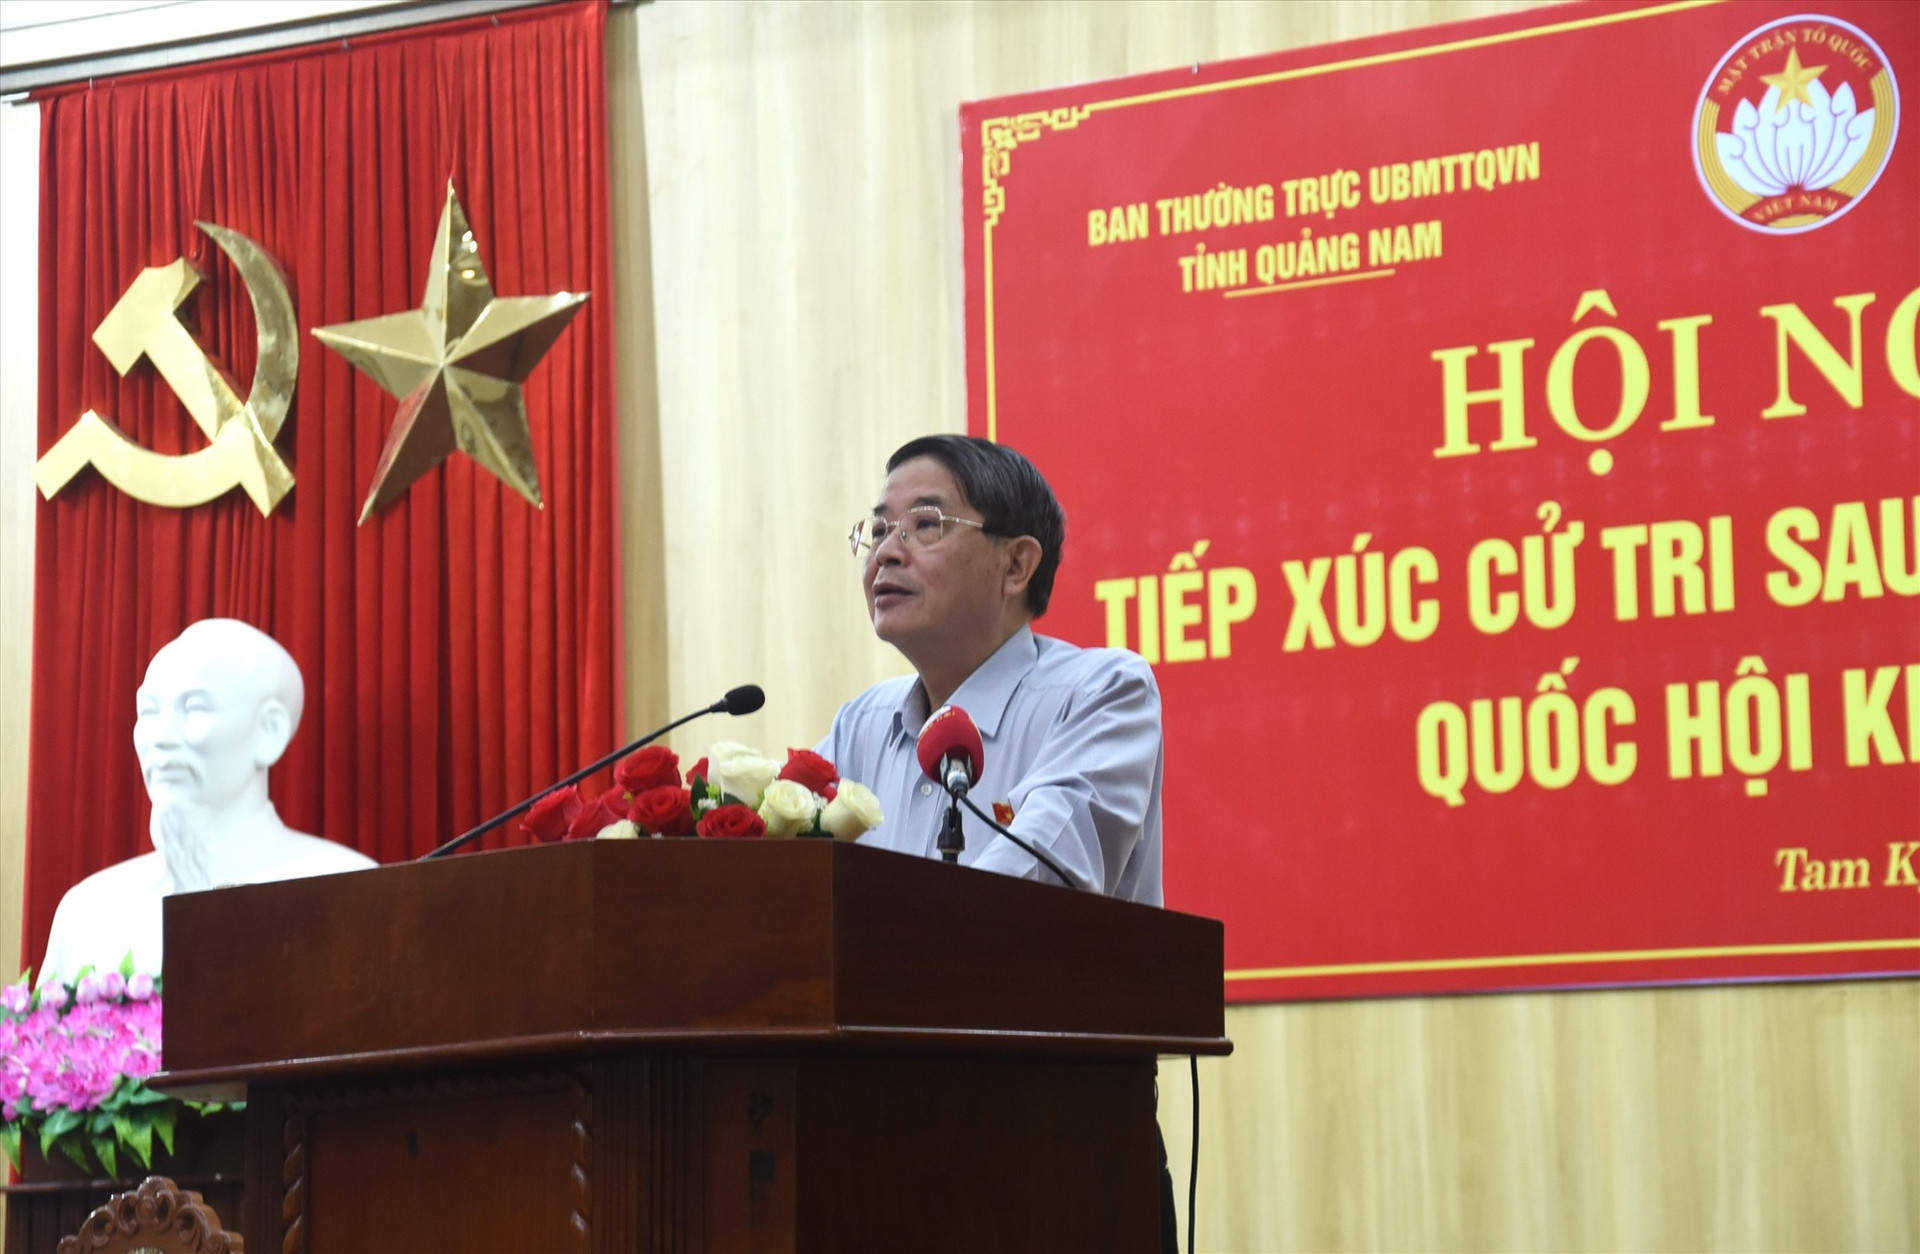 Phó Chủ tịch Quốc hội Nguyễn Đức Hải cám ơn cử tri Tam Kỳ quan tâm có nhiều ý kiến góp ý cho Quốc hội. Ảnh: X.P